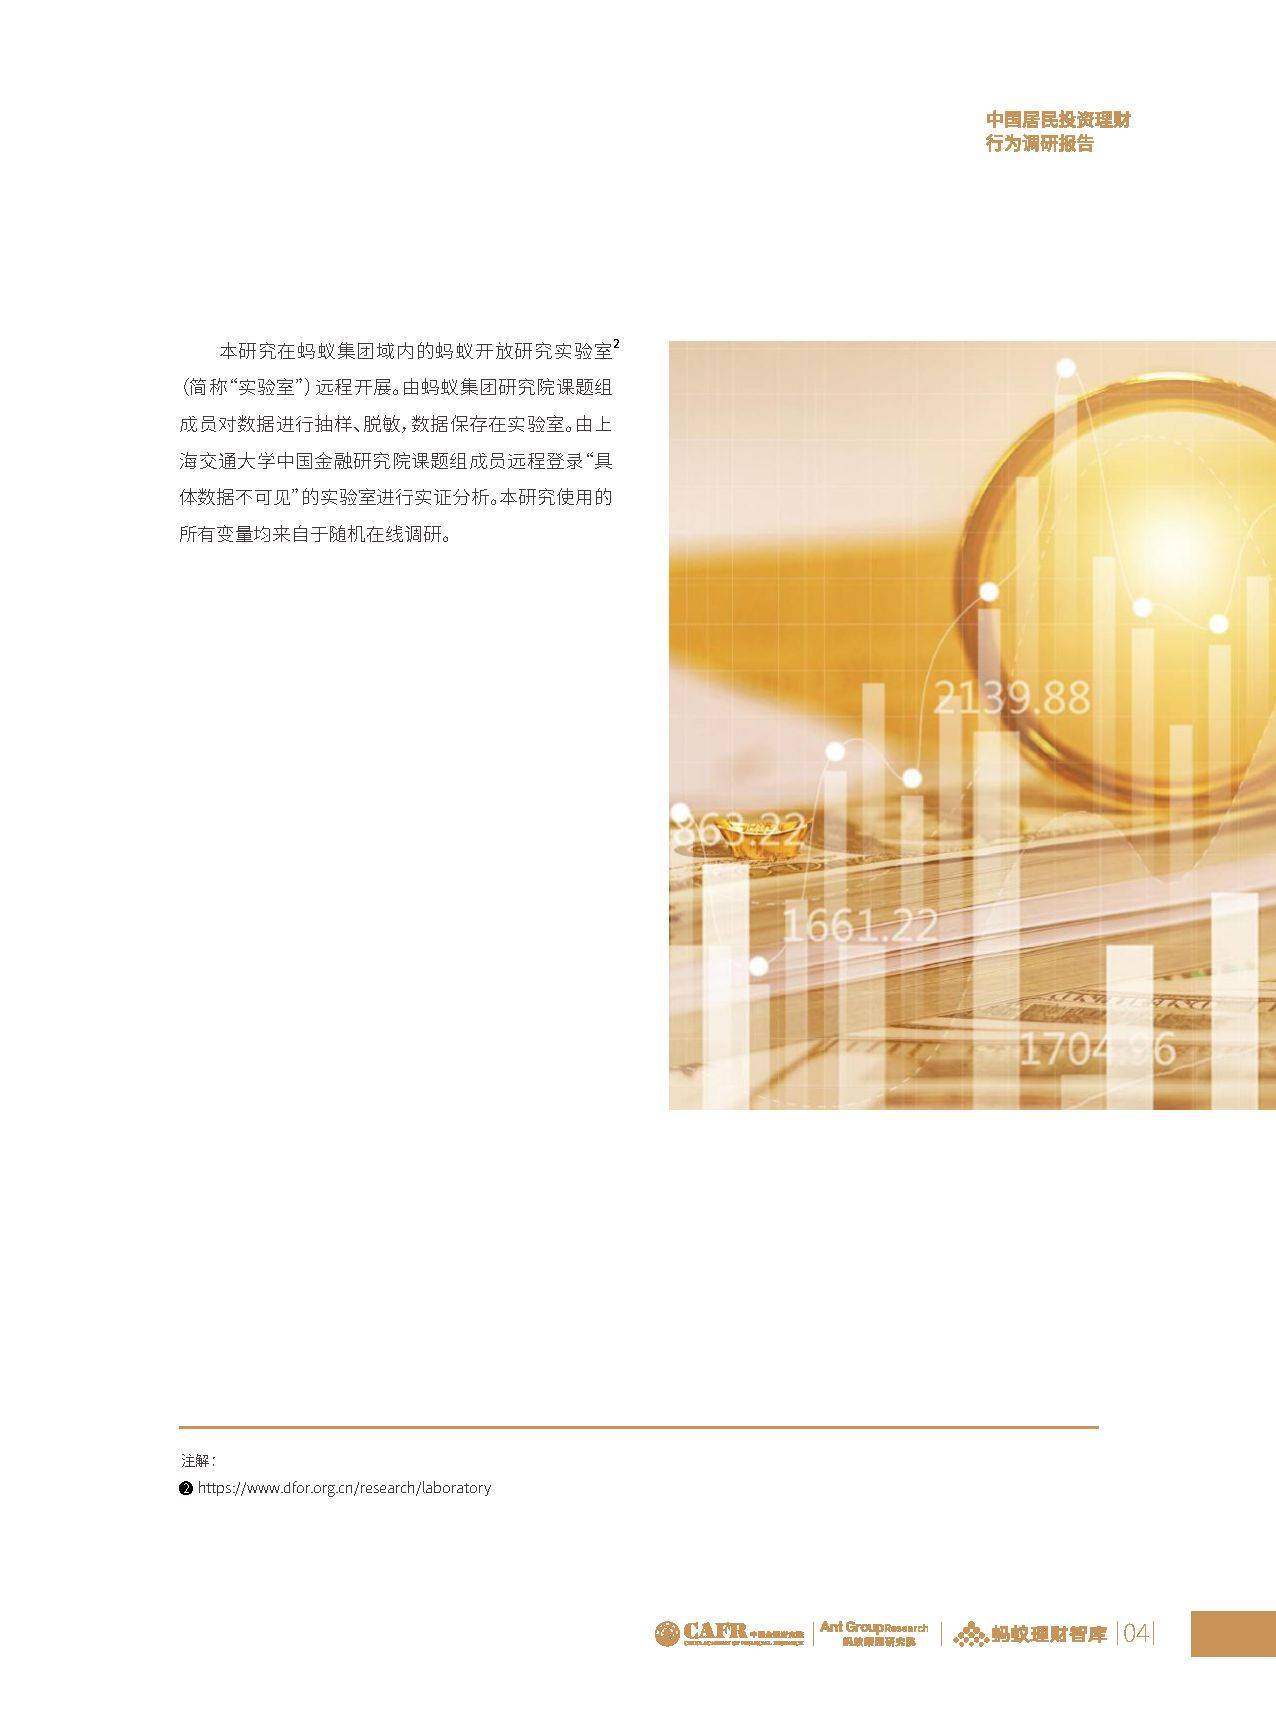 中国居民投资理财行为调研报告（附下载）